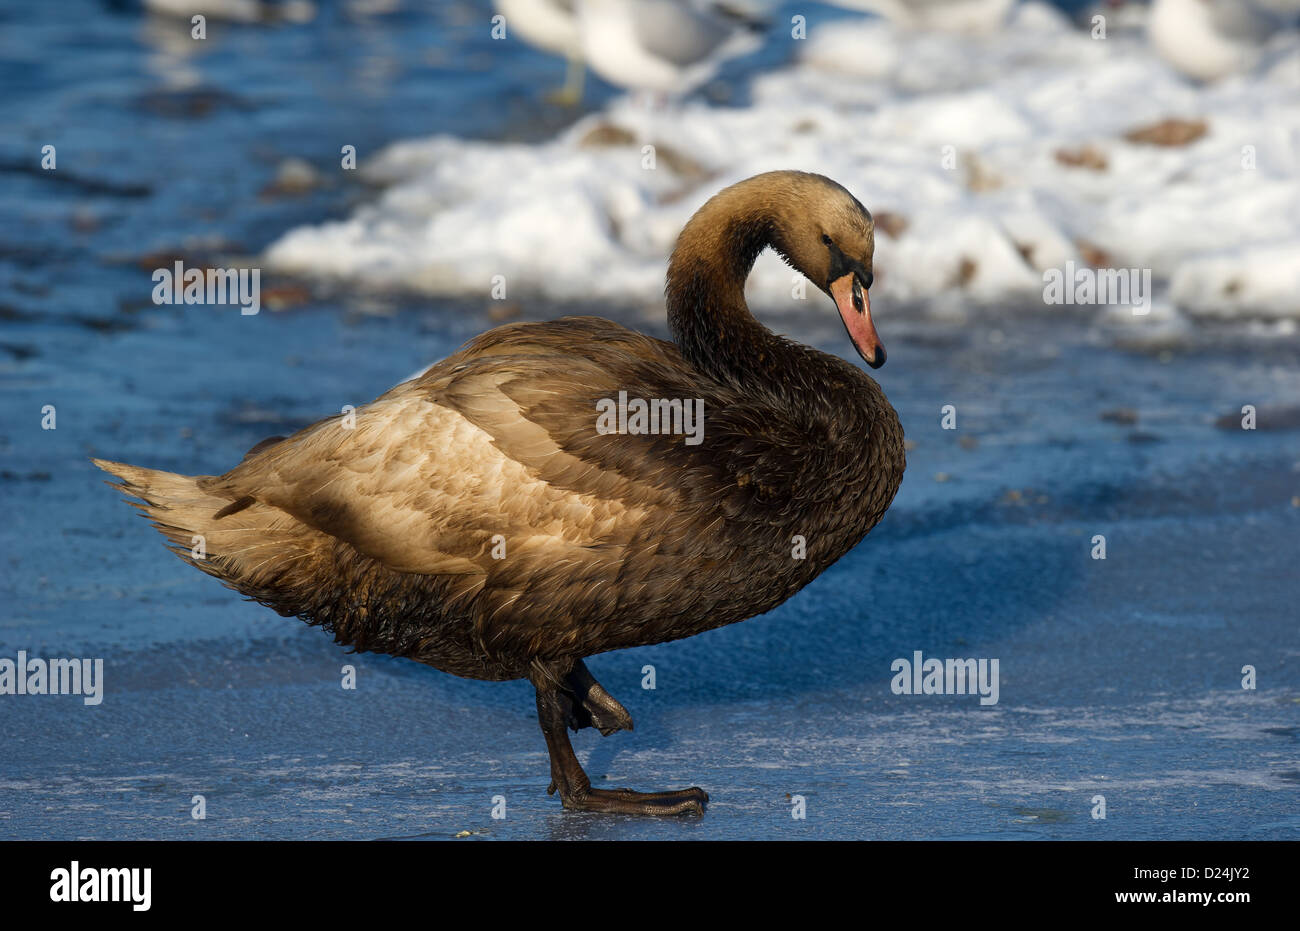 Mute Swan (Cygnus olor) adulte, avec un plumage mal huilés, debout sur la glace, Merseyside, Angleterre, décembre Banque D'Images